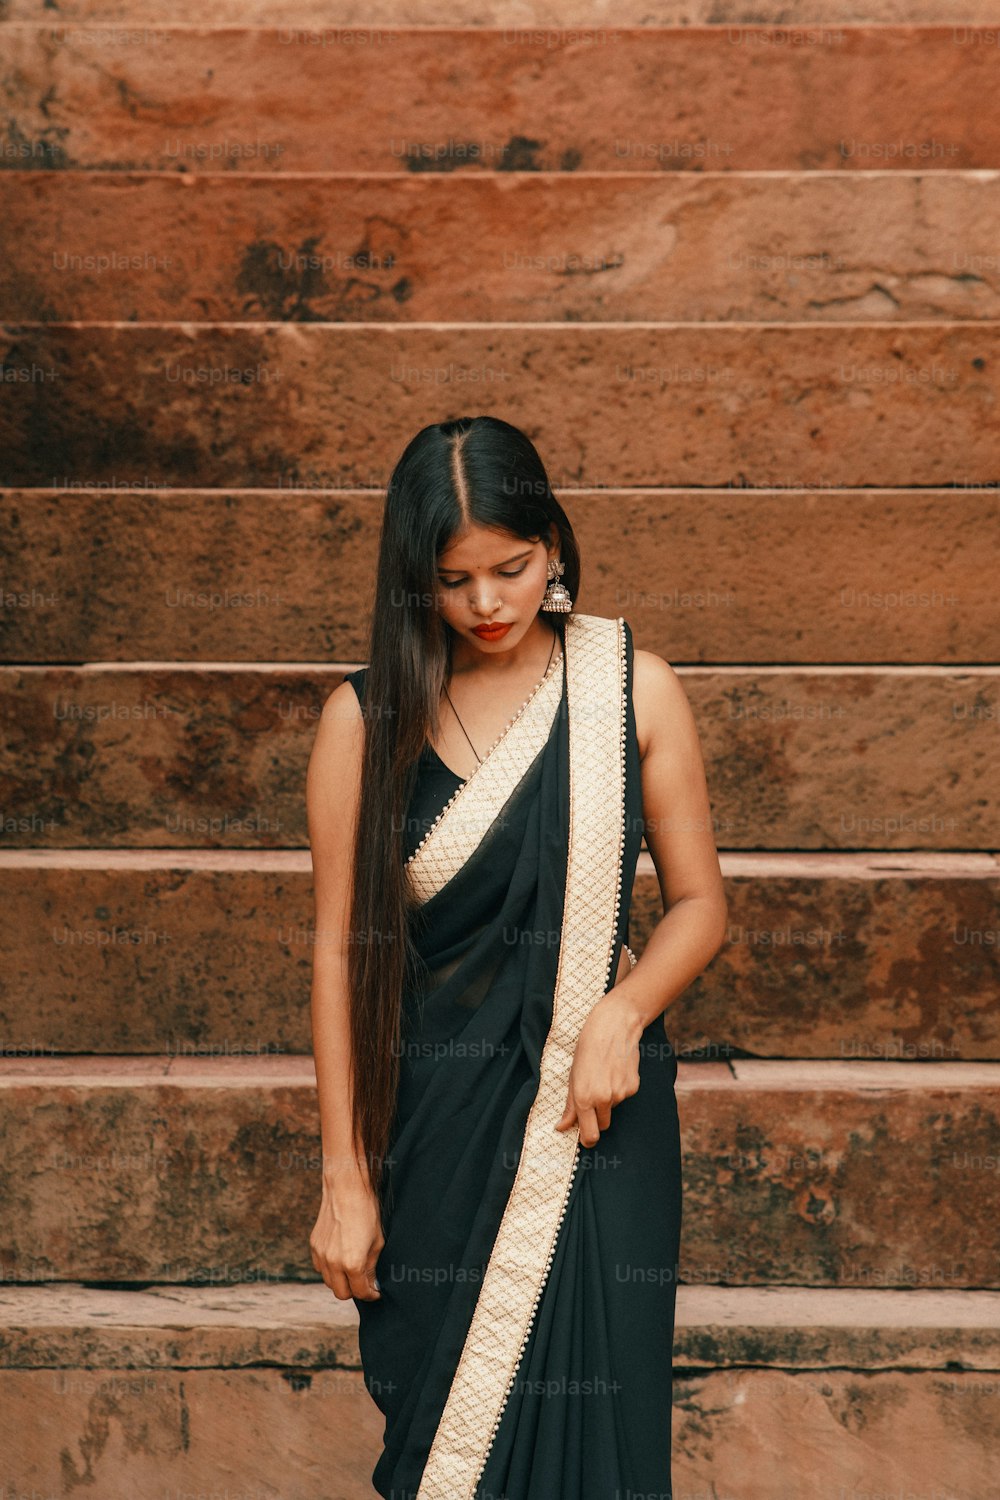 Una mujer en un sari blanco y negro